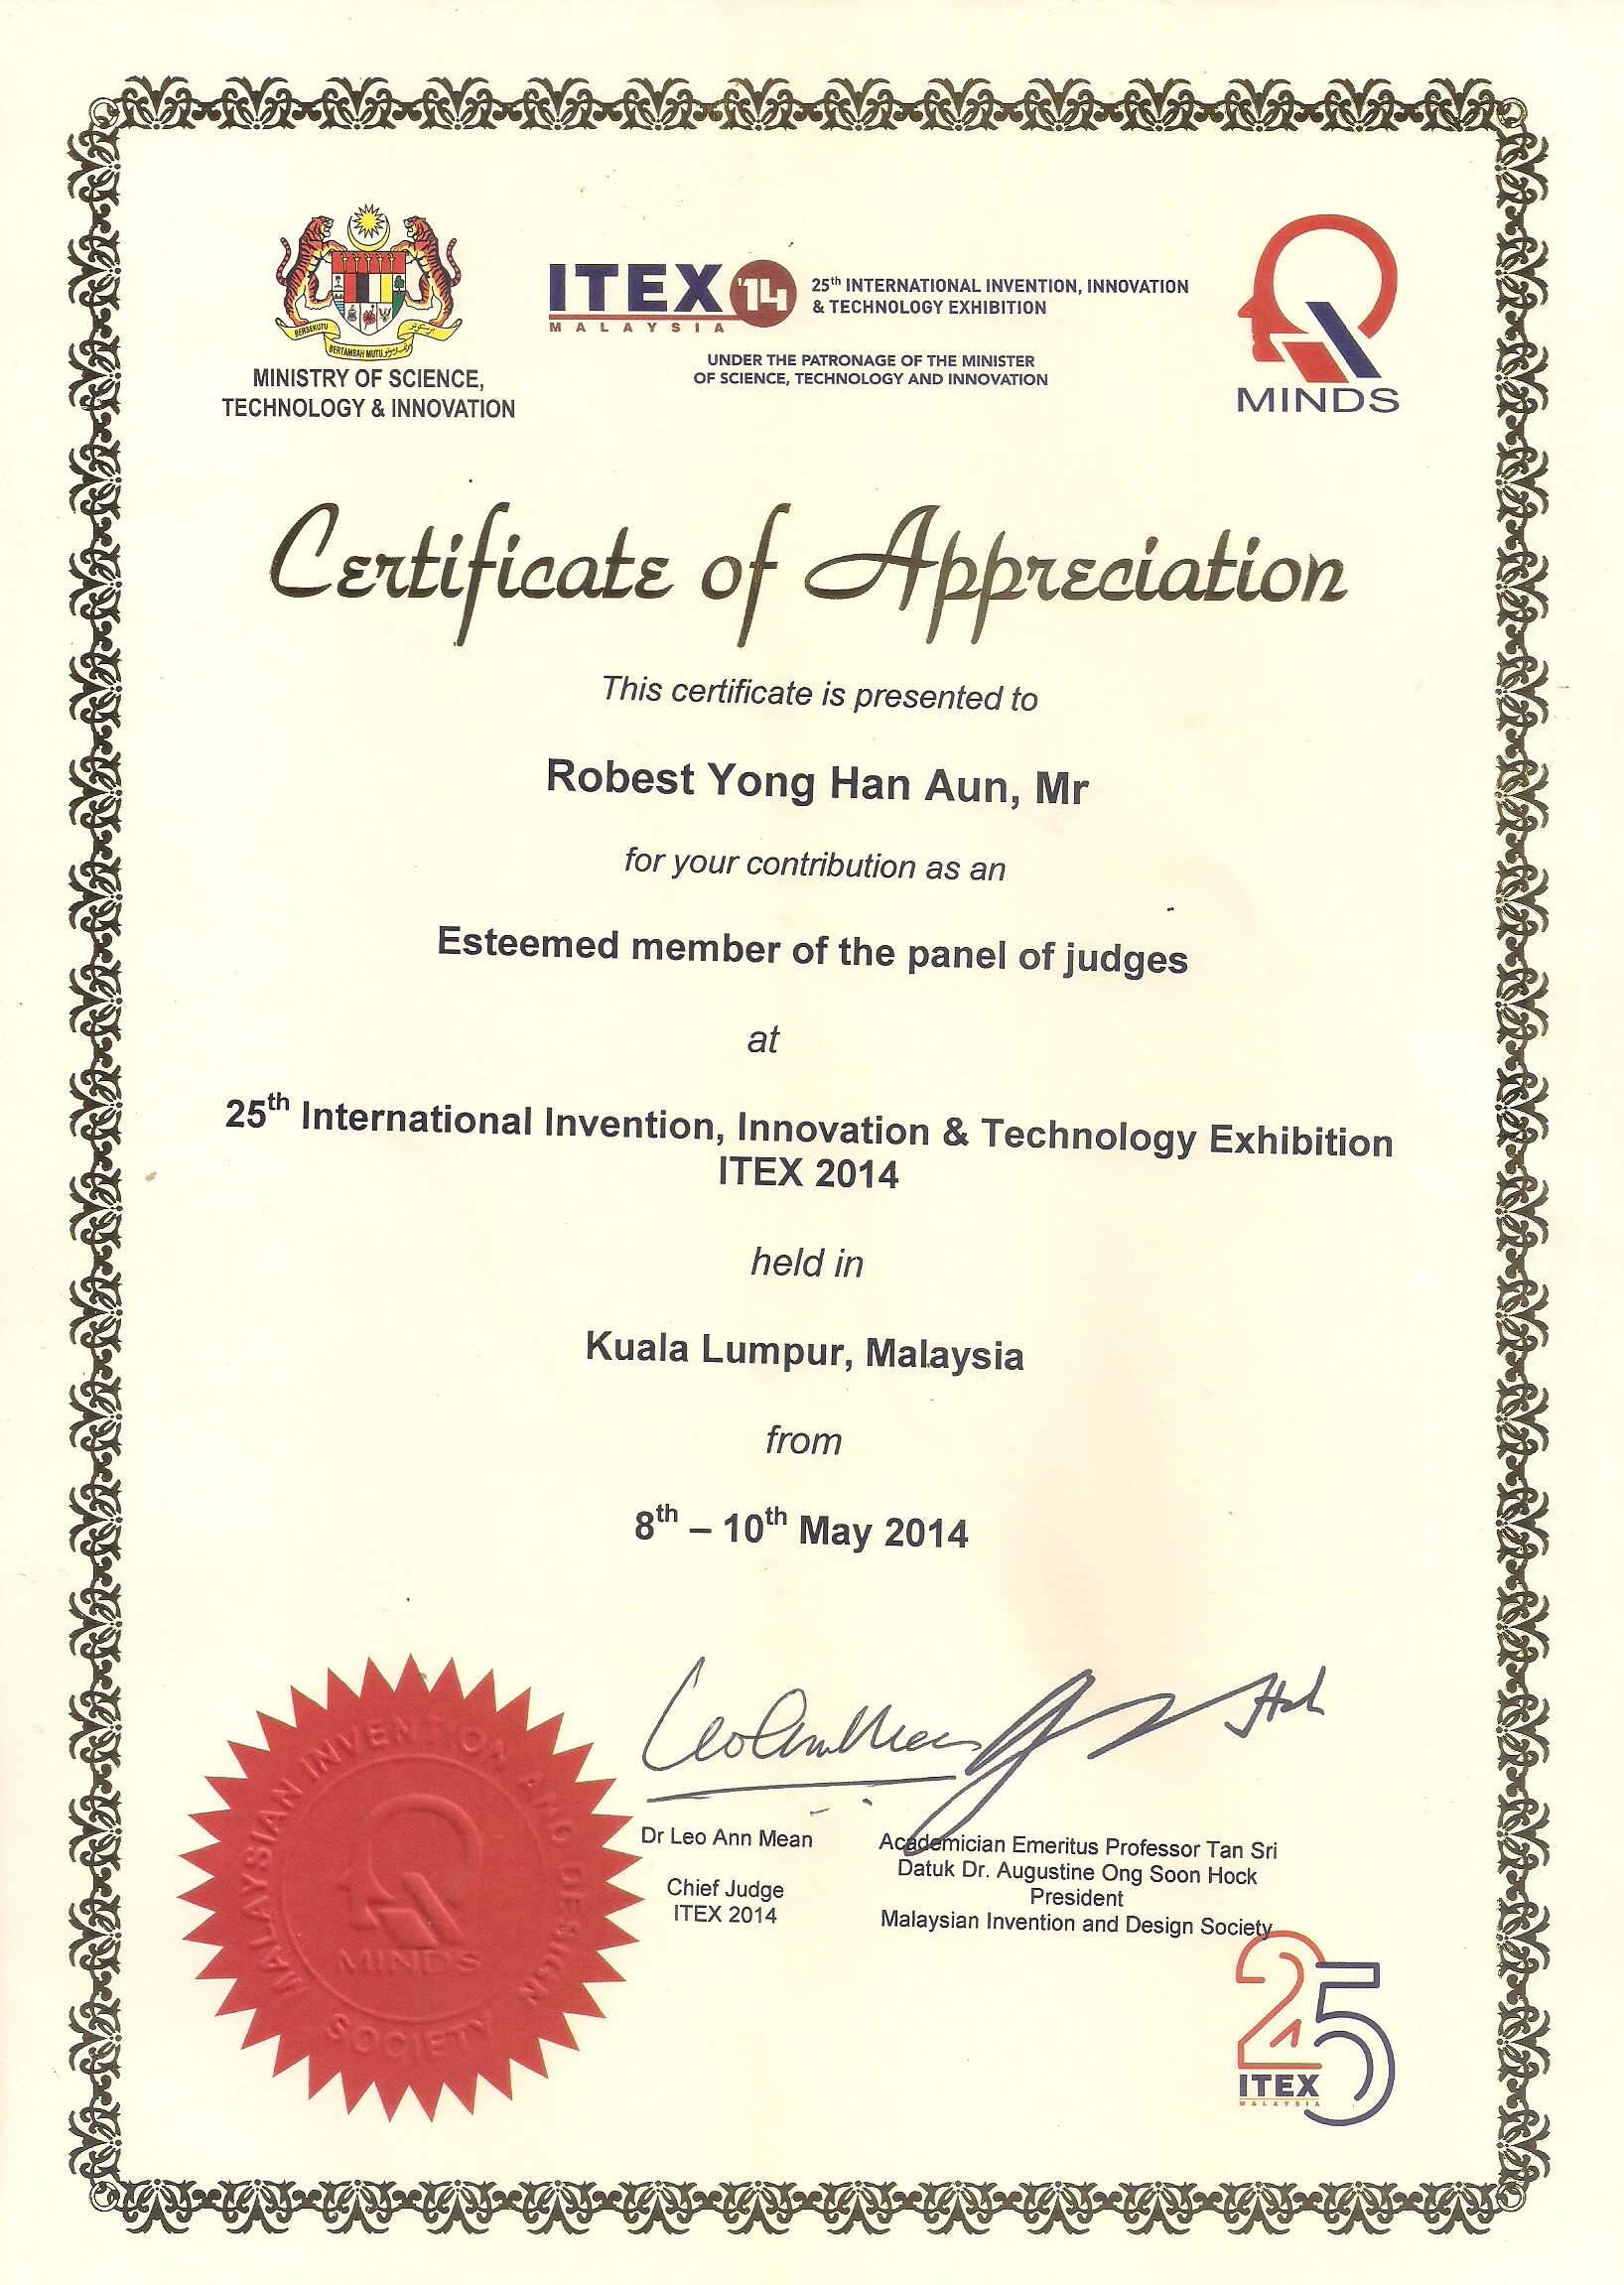 ITEX 2014 - Certificate